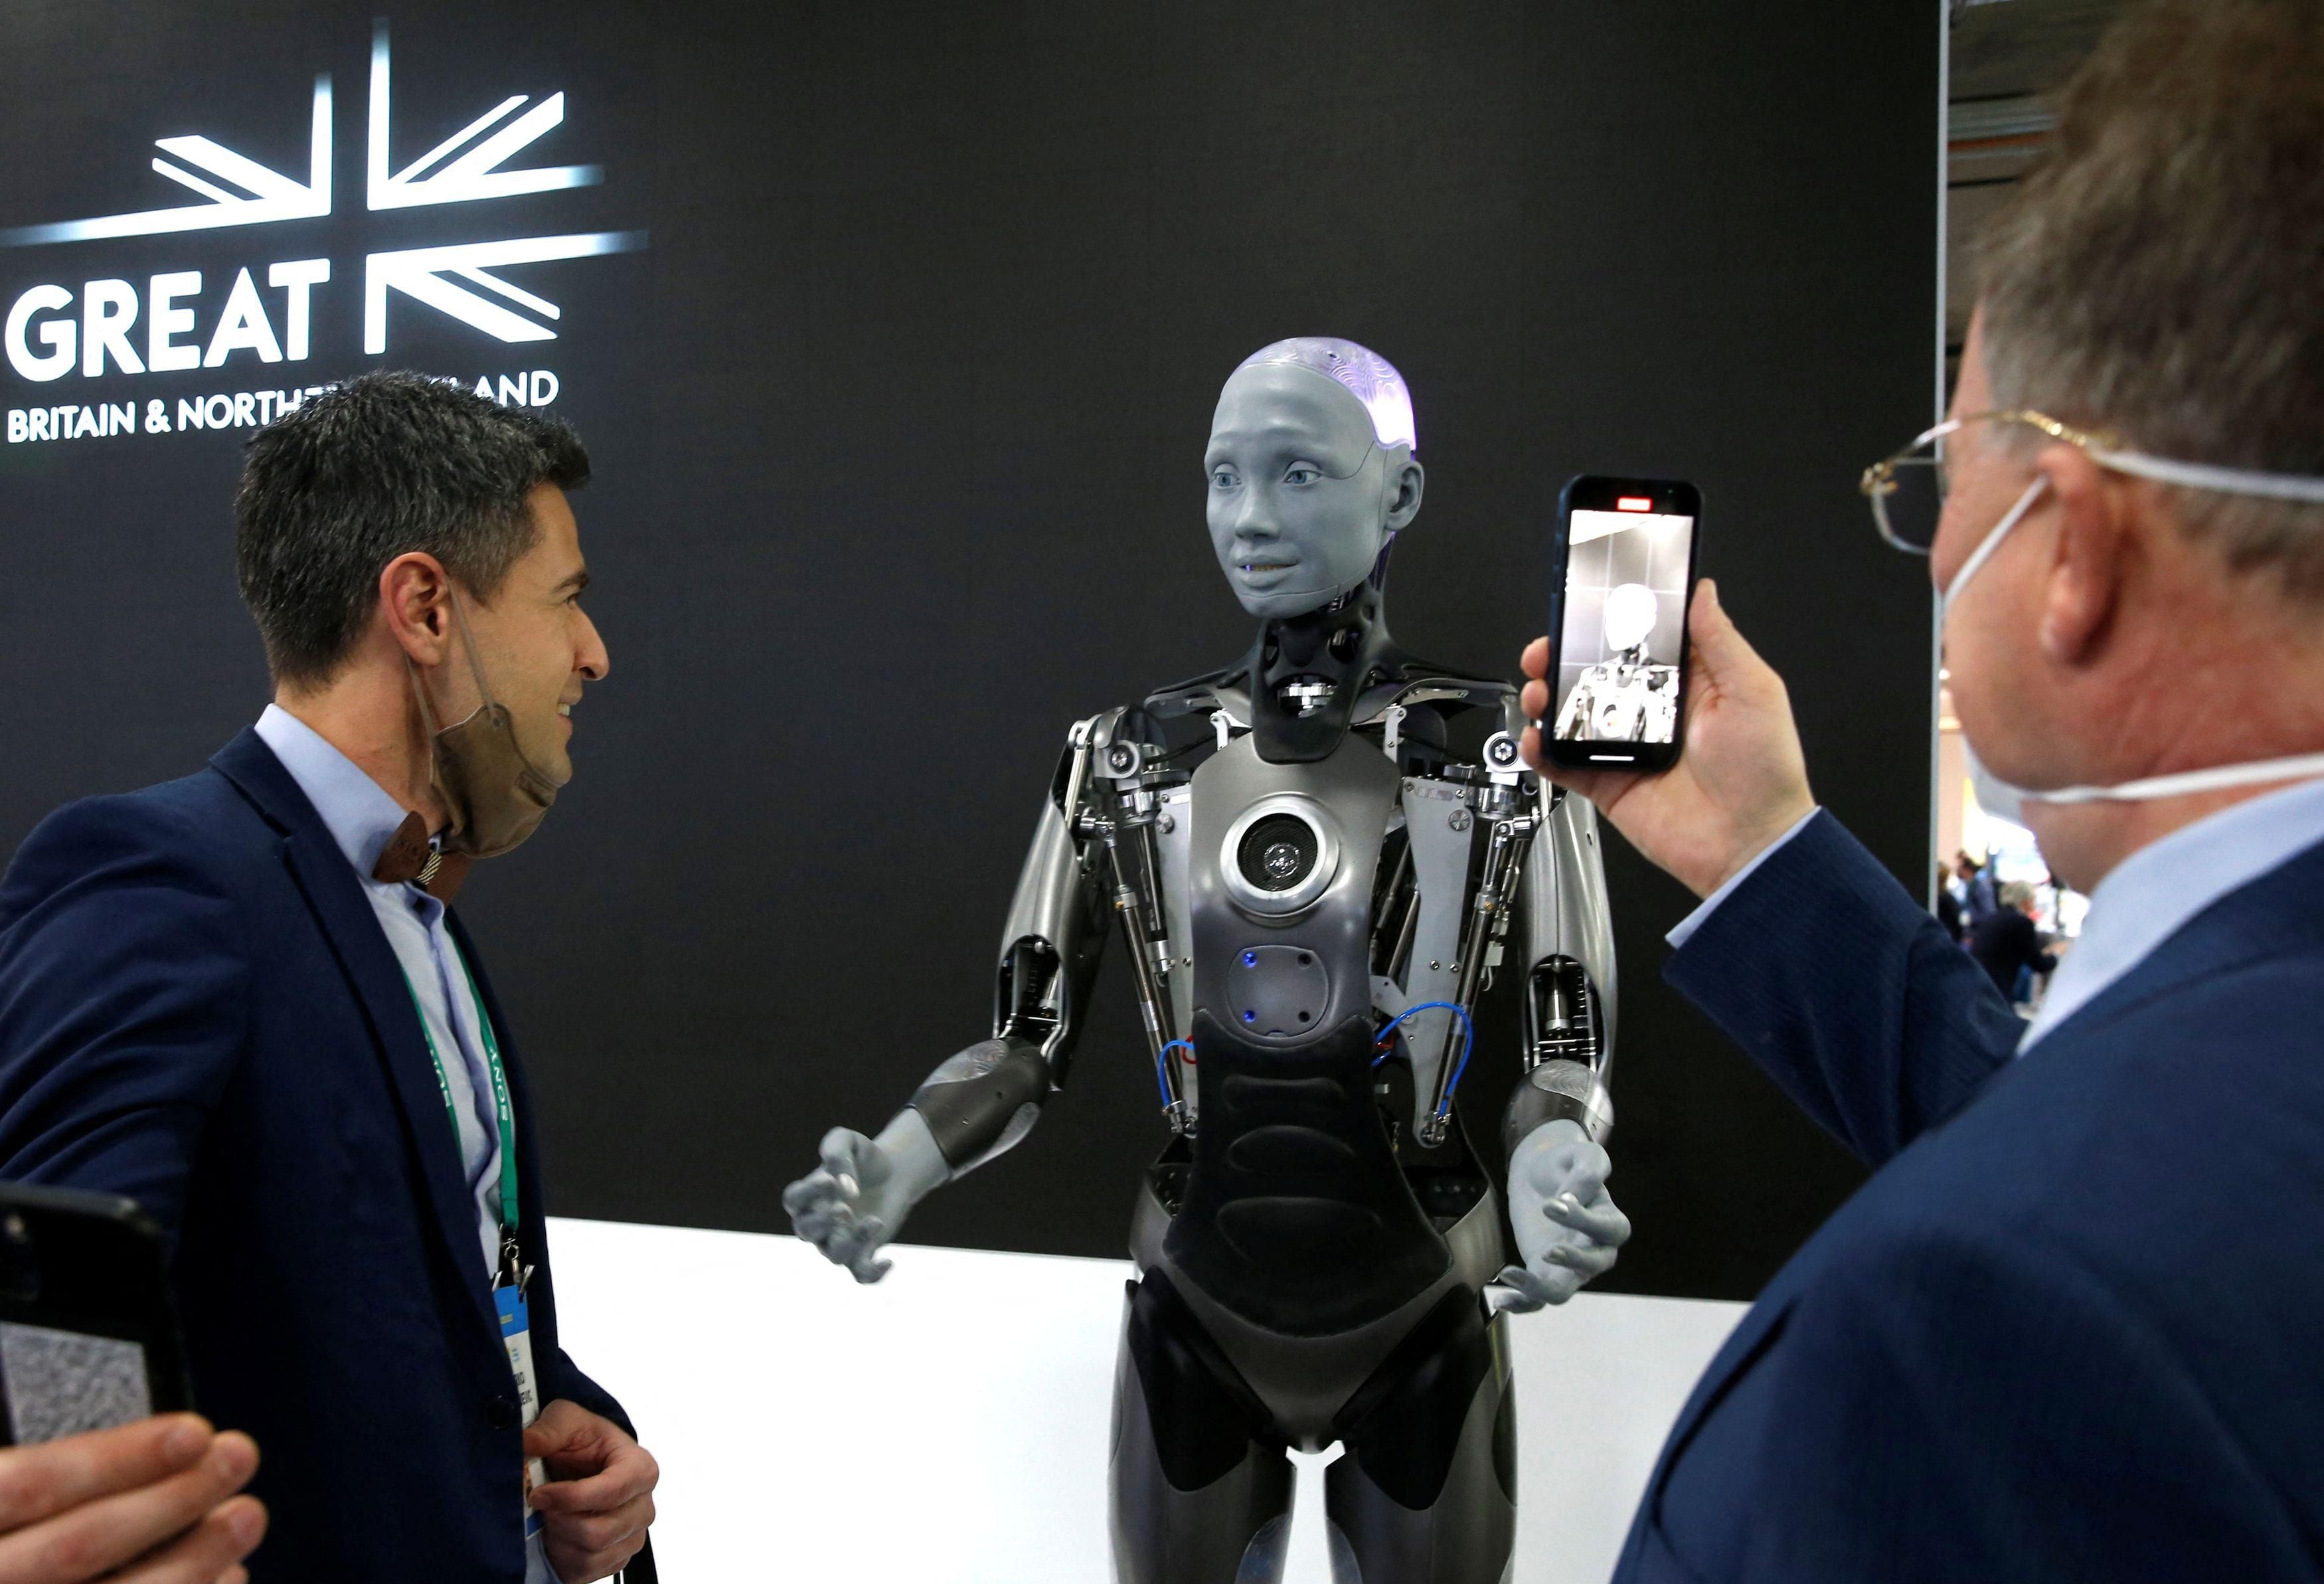 Primeiro robô humanoide a trabalhar é segurança de fábricas nos